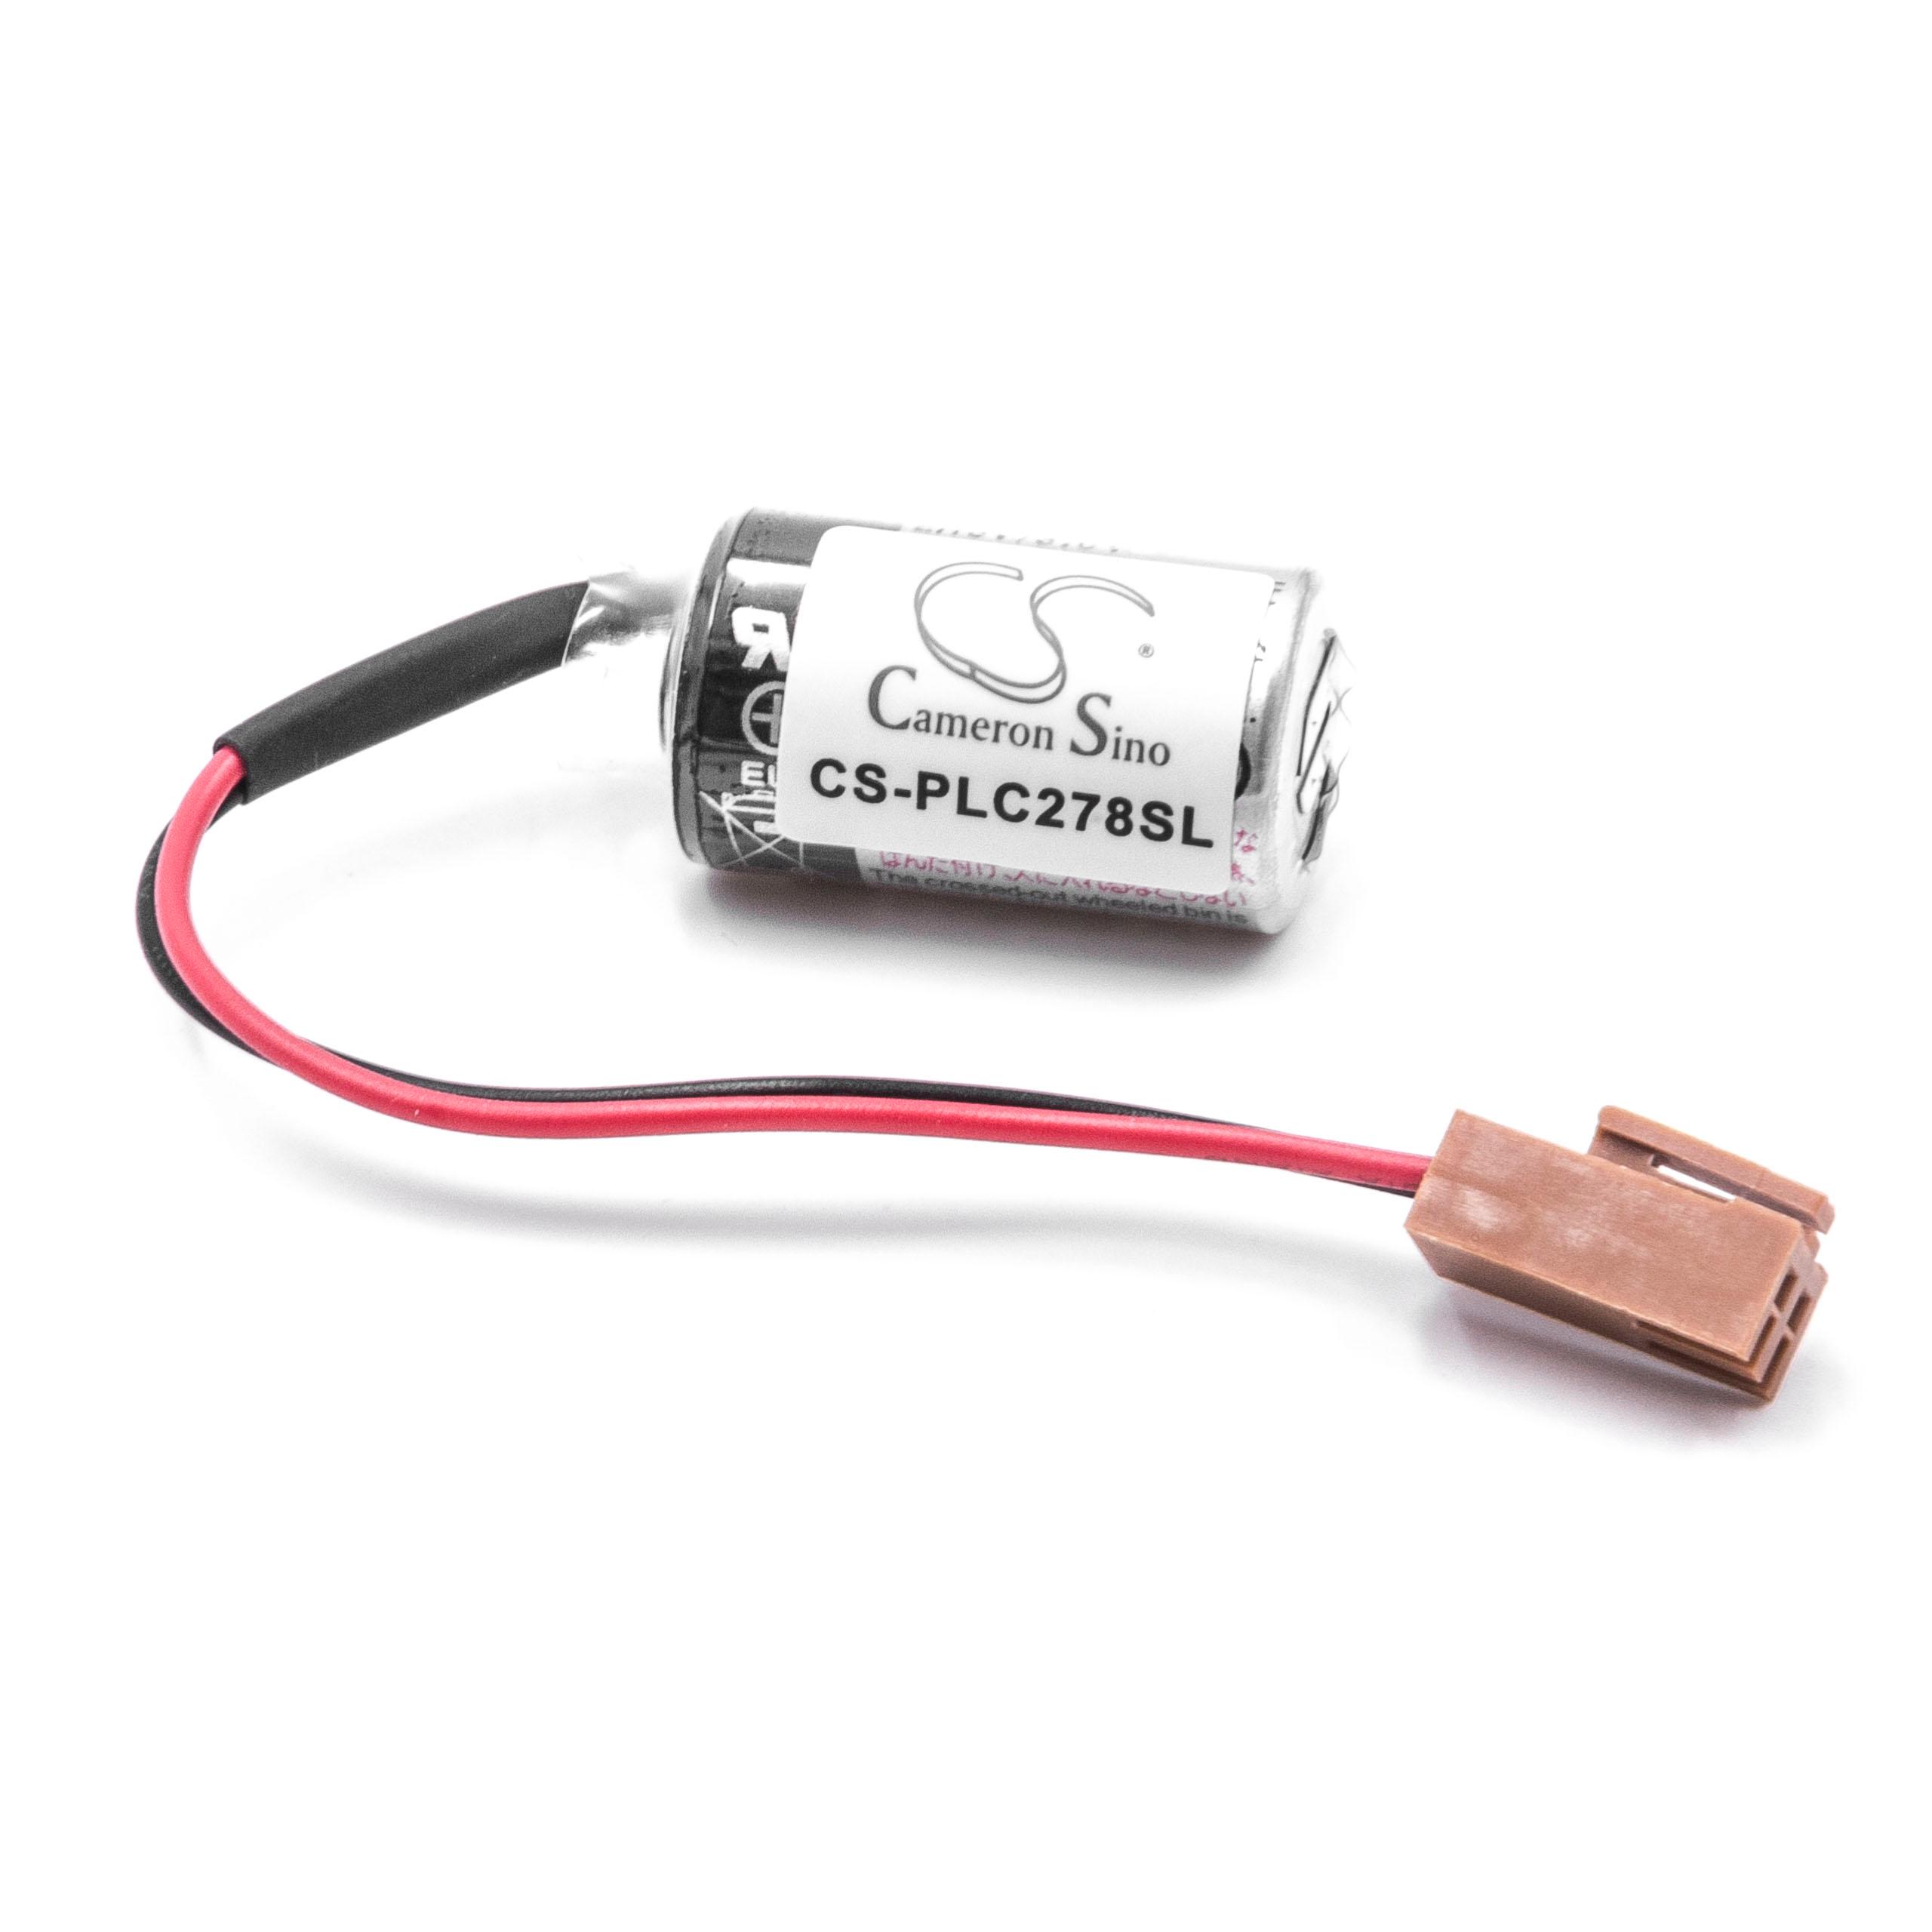 Batteria per PLC Programmable Logic Controller sostituisce ER3V/3.6V Mitsubishi - 1000mAh 3,6V Li-MnO2